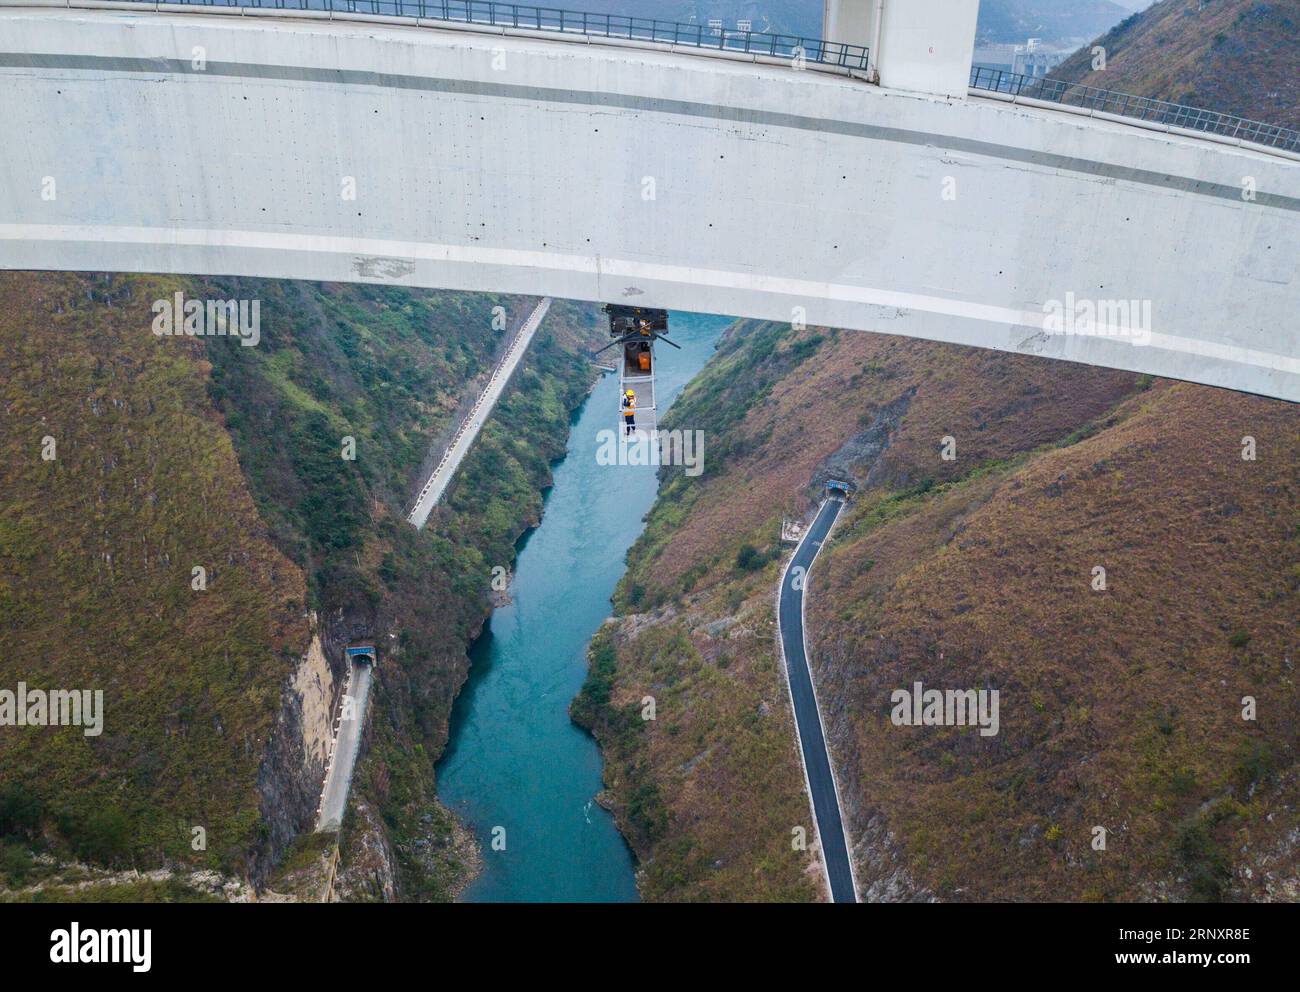 (180210) -- GUIYANG, 10. Februar 2018 -- Brückenpfleger arbeiten unter dem Bogen der Beipanjiang-Eisenbahnbrücke in der südwestchinesischen Provinz Guizhou, 26. Januar 2018. Die 721 Meter lange Hochgeschwindigkeitsbahnbrücke ist Teil der Hochgeschwindigkeitsbahnstrecke Shanghai-Kunming, die die wohlhabende Ostküste des Landes mit dem weniger entwickelten Südwesten verbindet. Instandhaltungsarbeiter untersuchen die Brücke täglich, um die Sicherheit der Eisenbahnstrecke zu gewährleisten. ) (Zkr) CHINA-GUIZHOU-BRIDGE MAINTENANCE(CN) LiuxXu PUBLICATIONxNOTxINxCHN Stockfoto